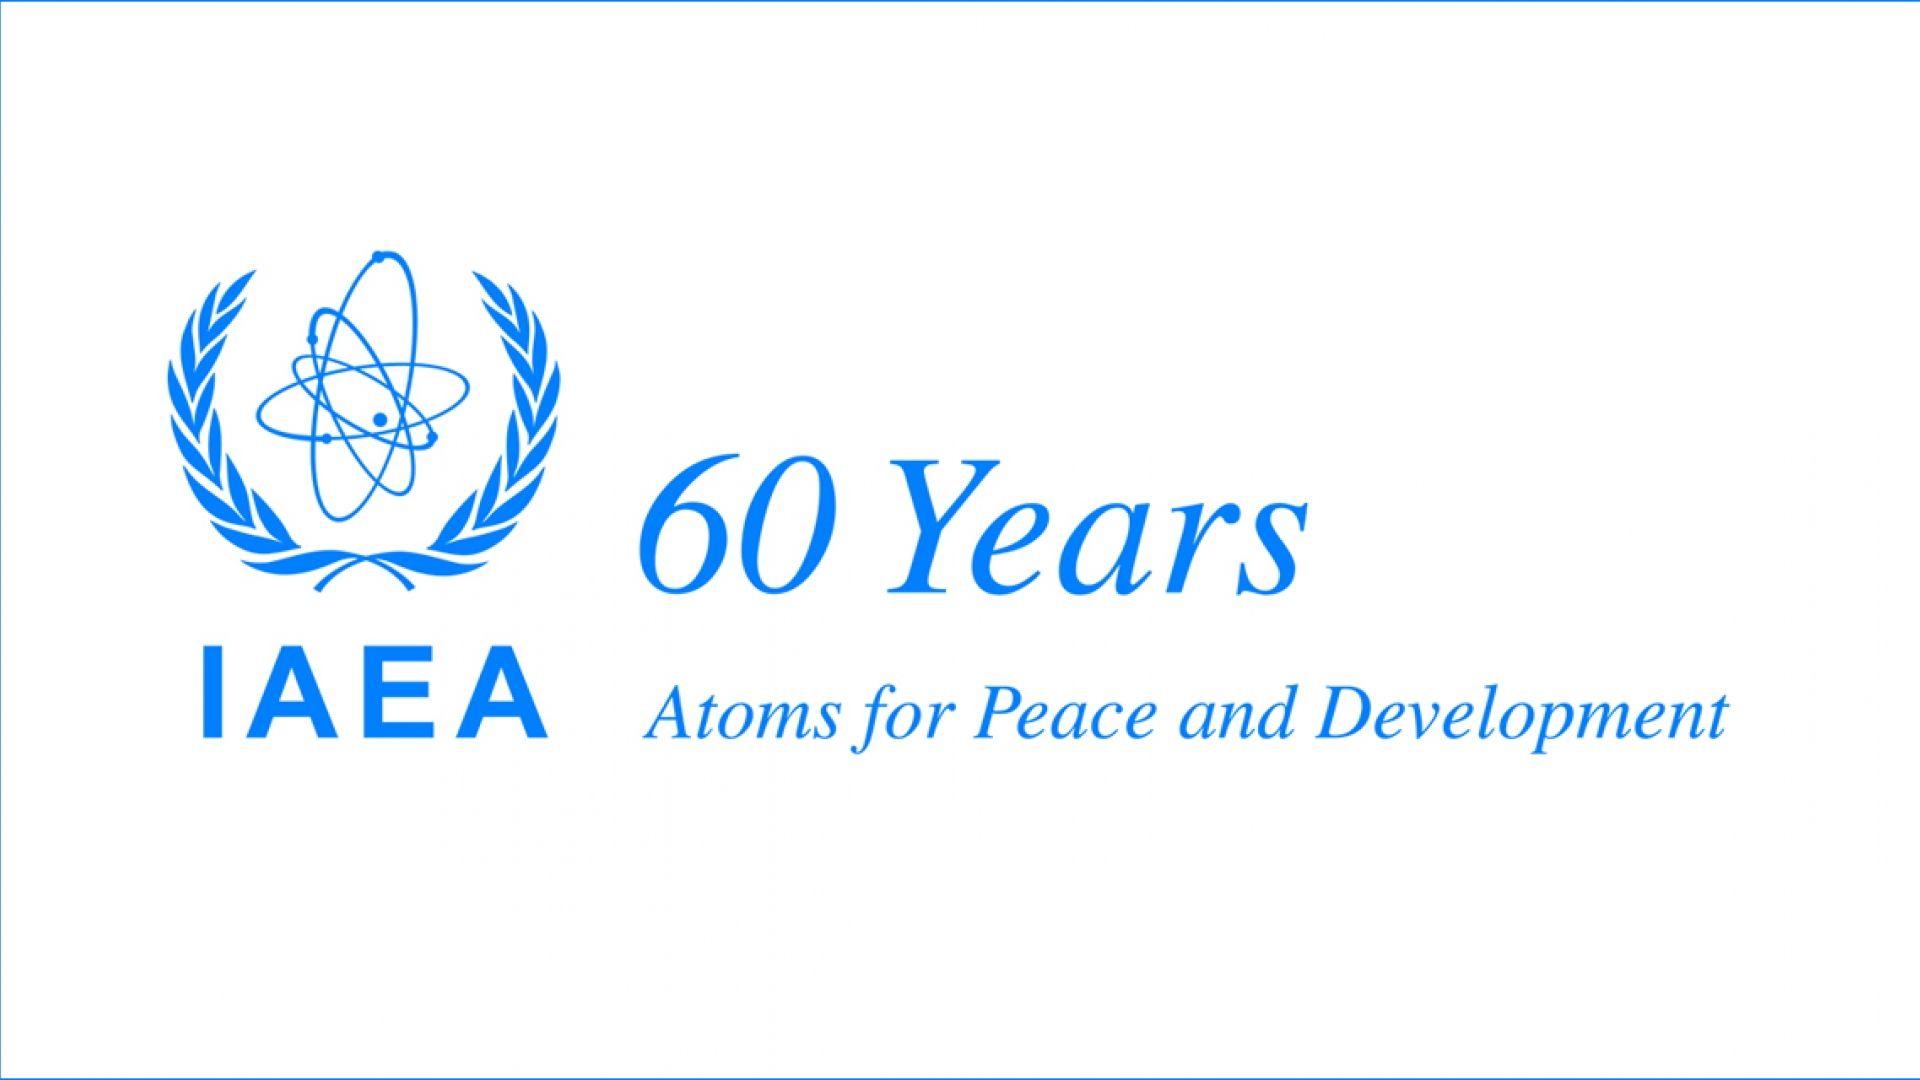 IAEA Logo - New IAEA Logo Announced: 60 Years of IAEA for Peace